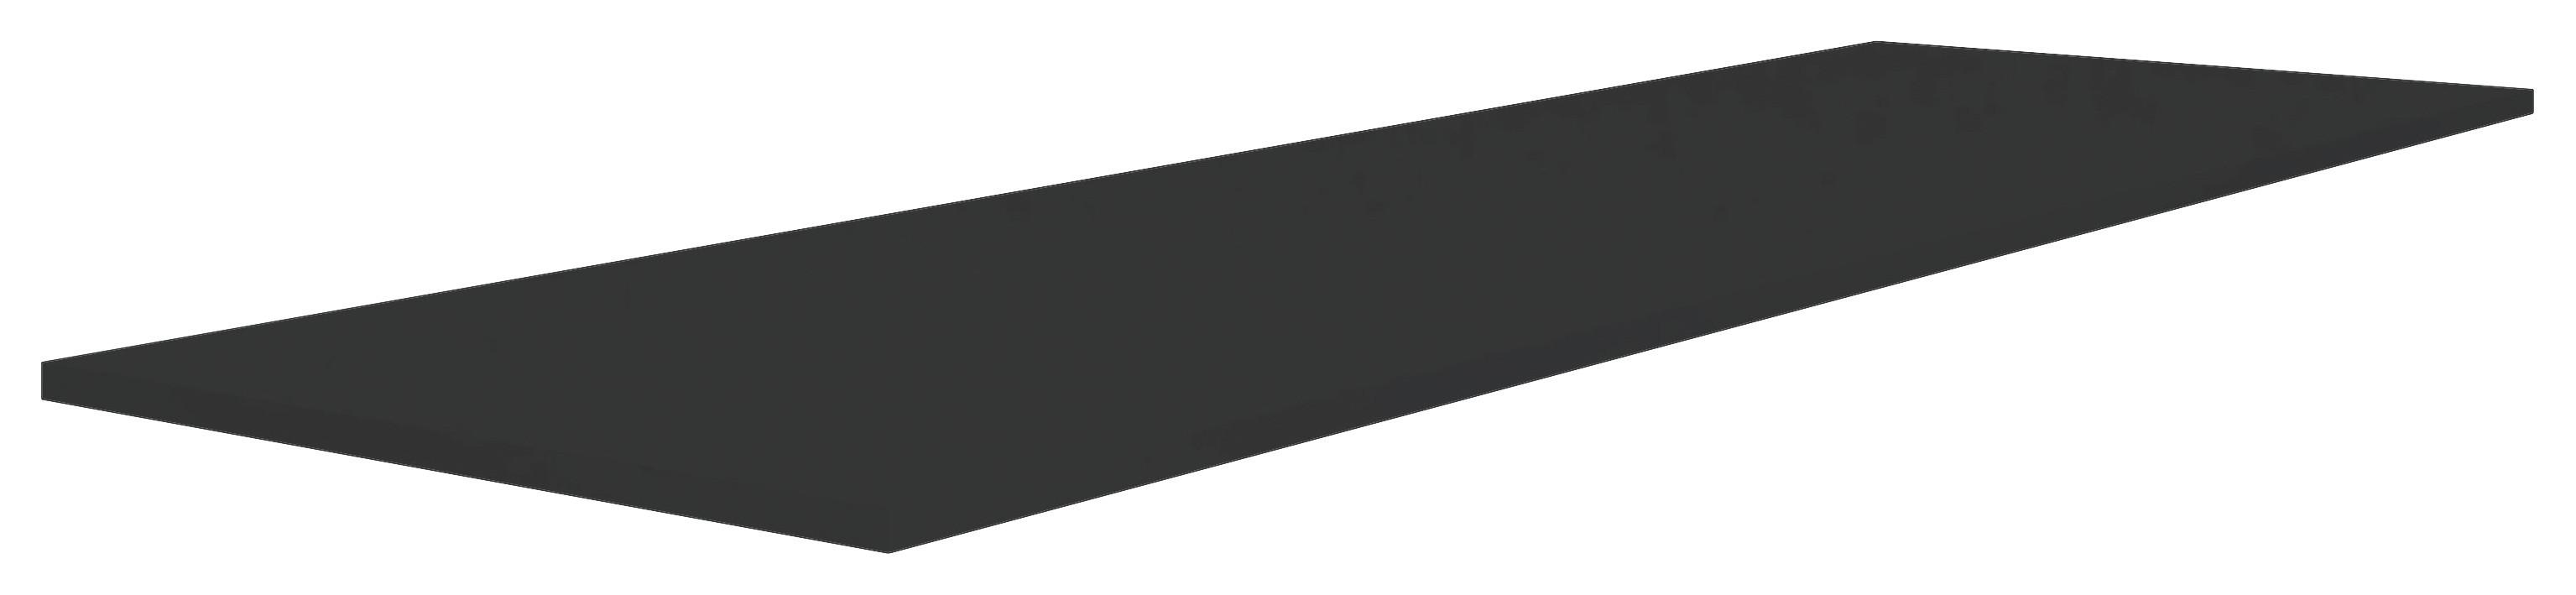 Vrchní Deska Unit-Elements - antracitová, Moderní, kompozitní dřevo (182,6/42/1,6cm) - Ondega